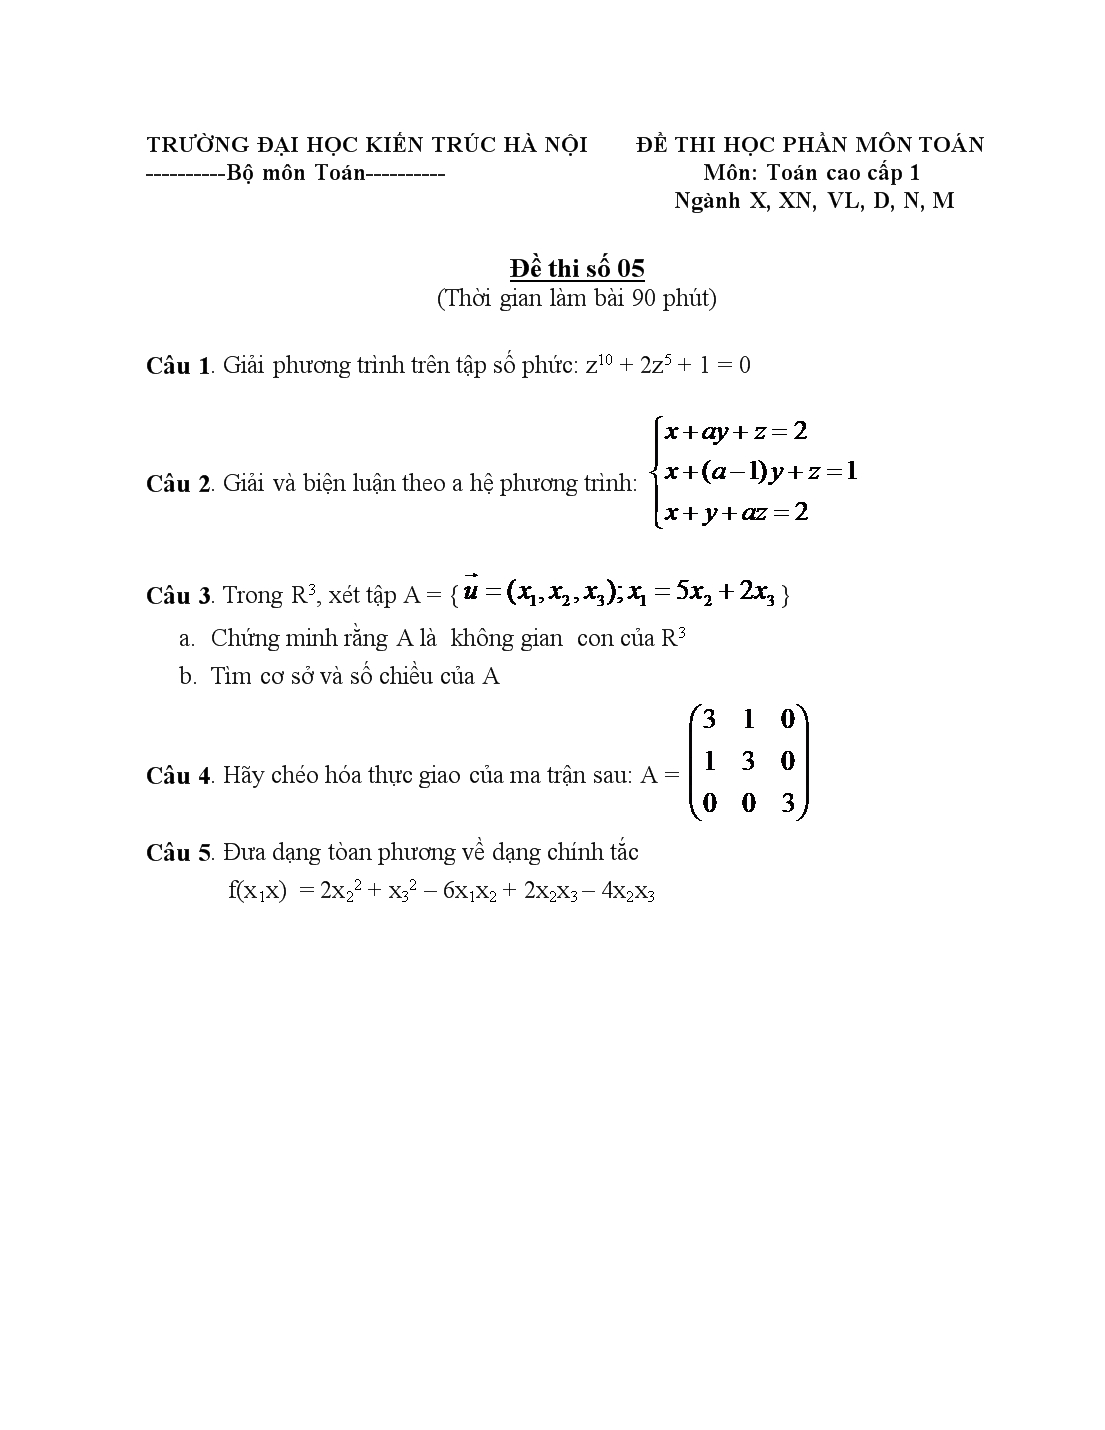 Đề thi học phần môn toán cao cấp 1 trang 5